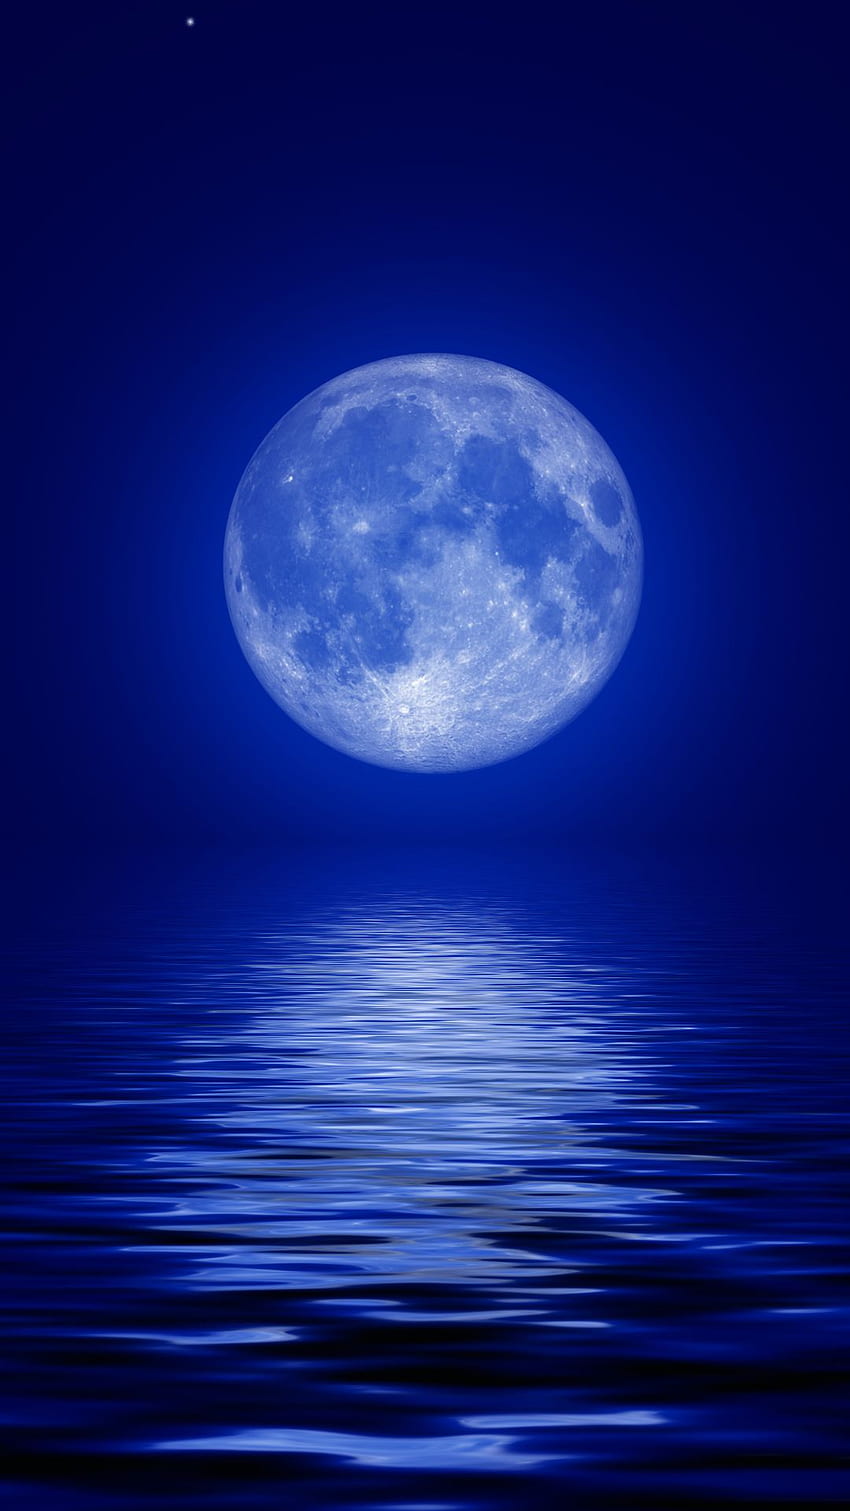 Księżyc w pełni na urządzenia mobilne — 2018, niebieski księżyc Tapeta na telefon HD